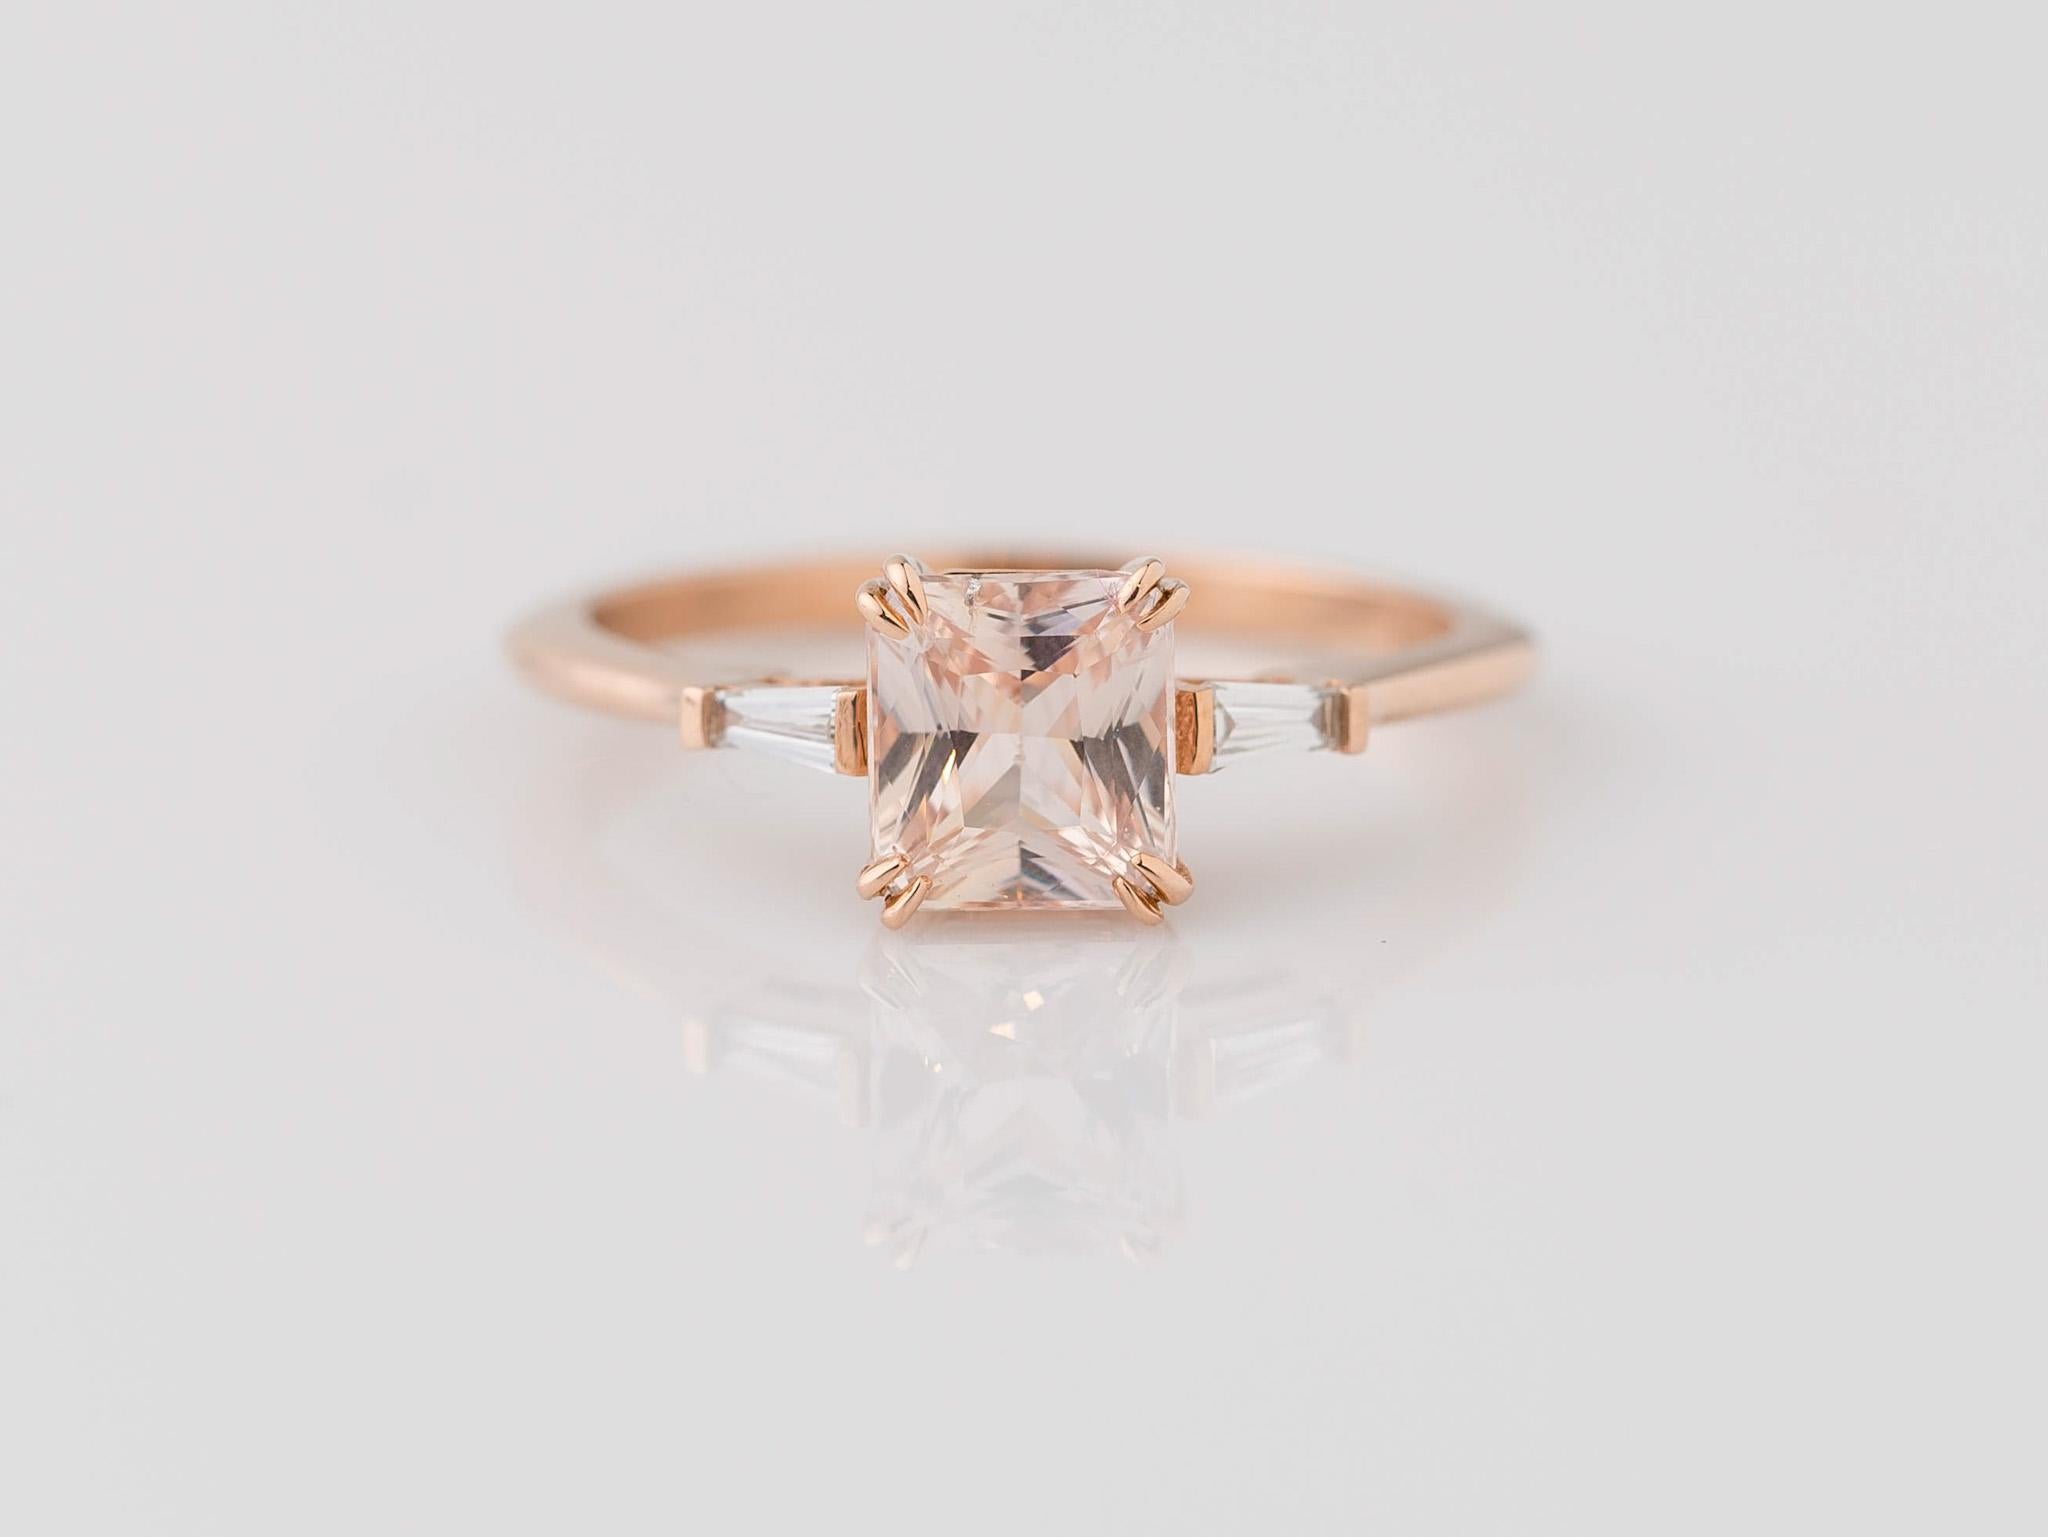 Schmücken Sie sich mit Eleganz in unserem GIA-zertifizierten 1,31-Karat-Ring mit rosafarbenem Saphir im Brillantschliff, einem fesselnden Meisterwerk. Im Mittelpunkt steht ein natürlicher, hitzebeständiger rosafarbener Saphir mit den Maßen 6,26 x